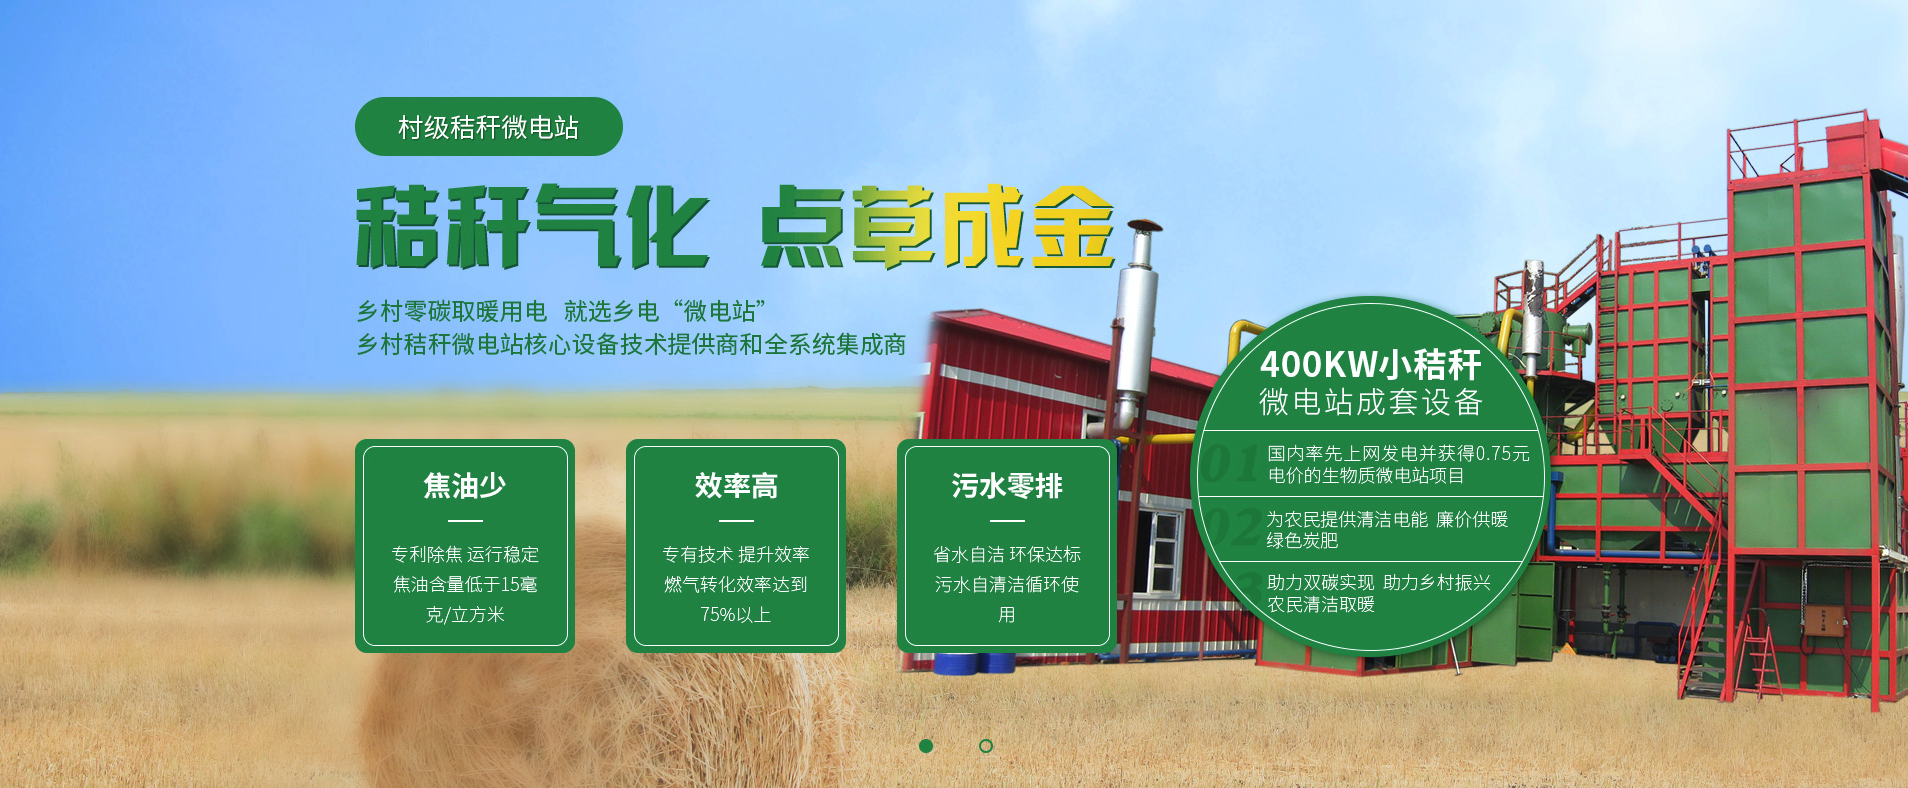 鄉村秸稈微電站效率高污水零排放 北京鄉電助力美麗鄉村建設